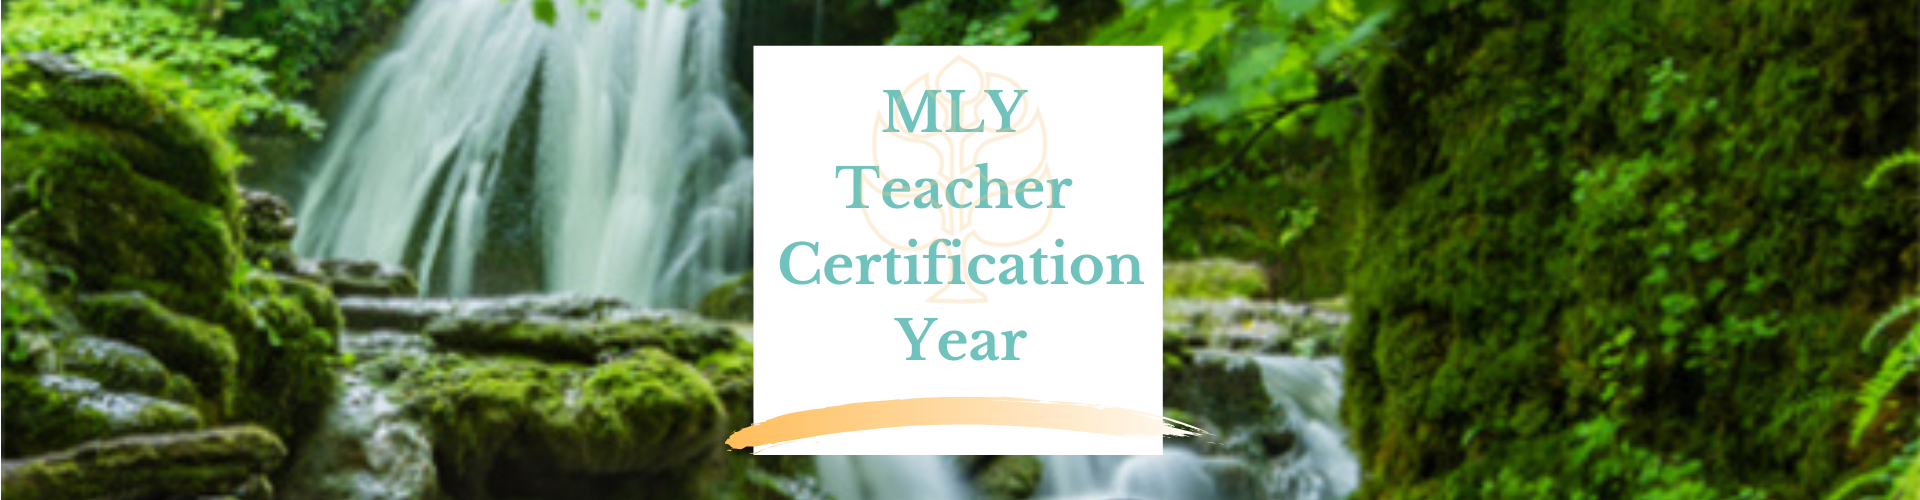 MLY Teacher Certification